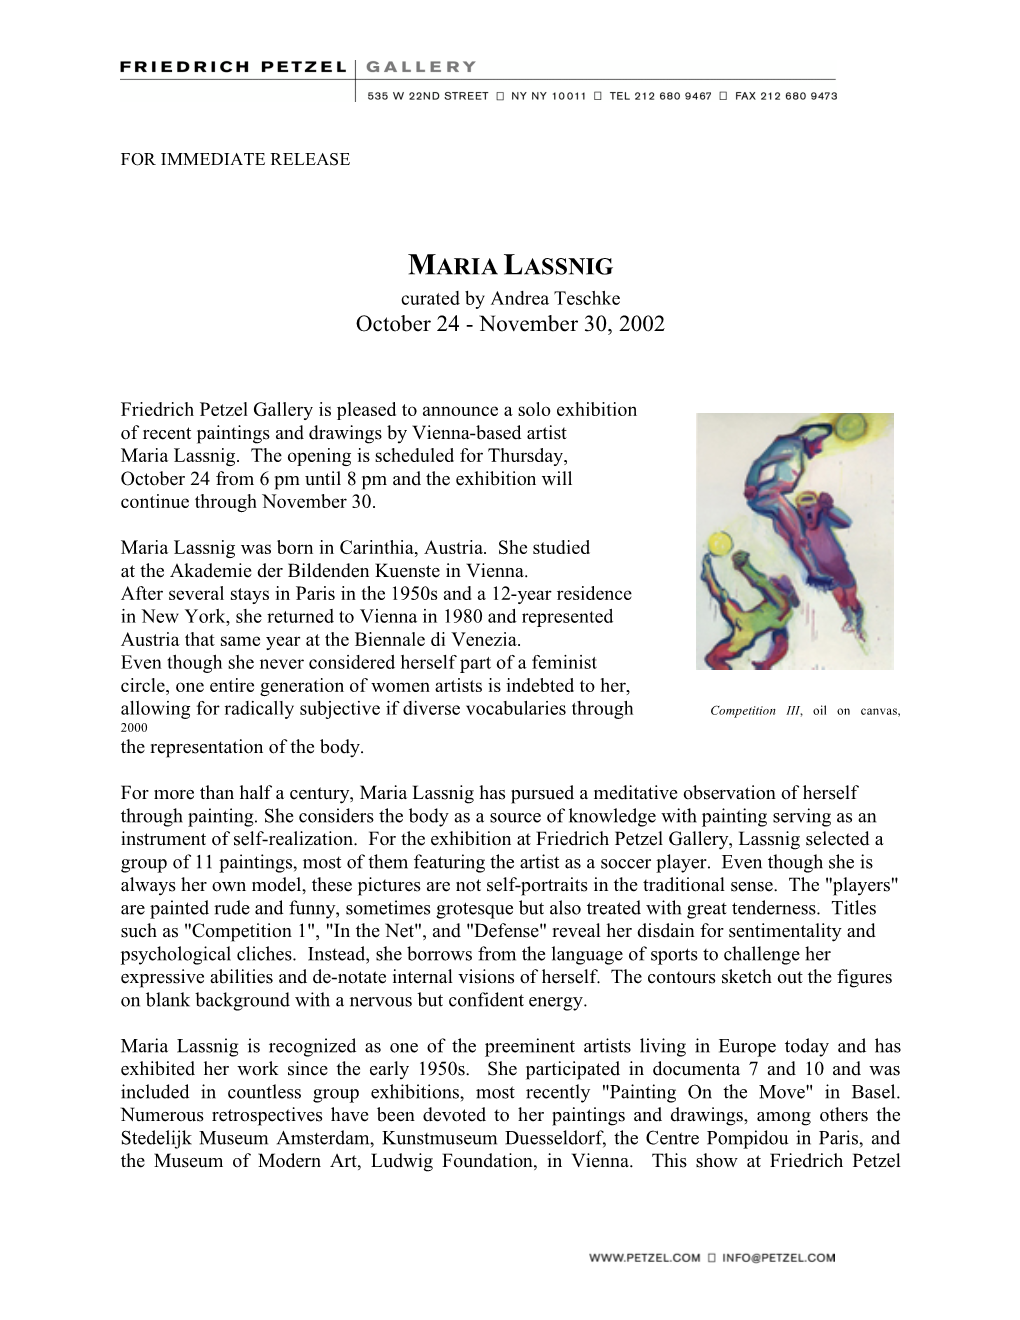 MARIA LASSNIG Curated by Andrea Teschke October 24 - November 30, 2002